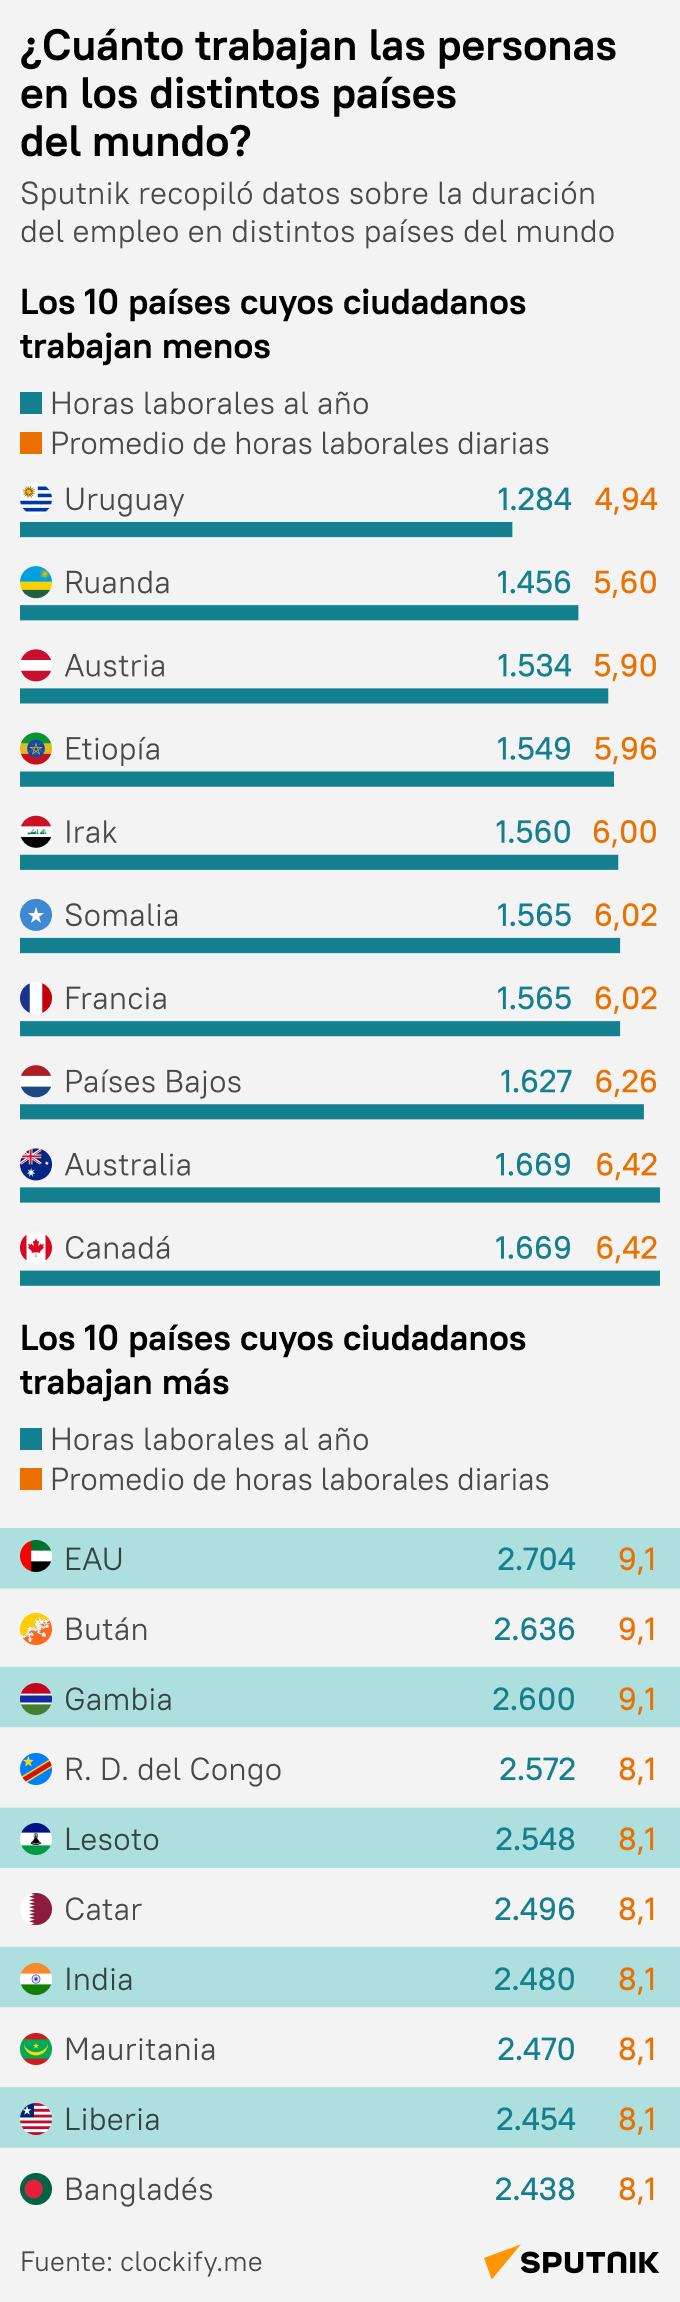 ¿Cuánto trabajan las personas en los distintos países del mundo? - Sputnik Mundo